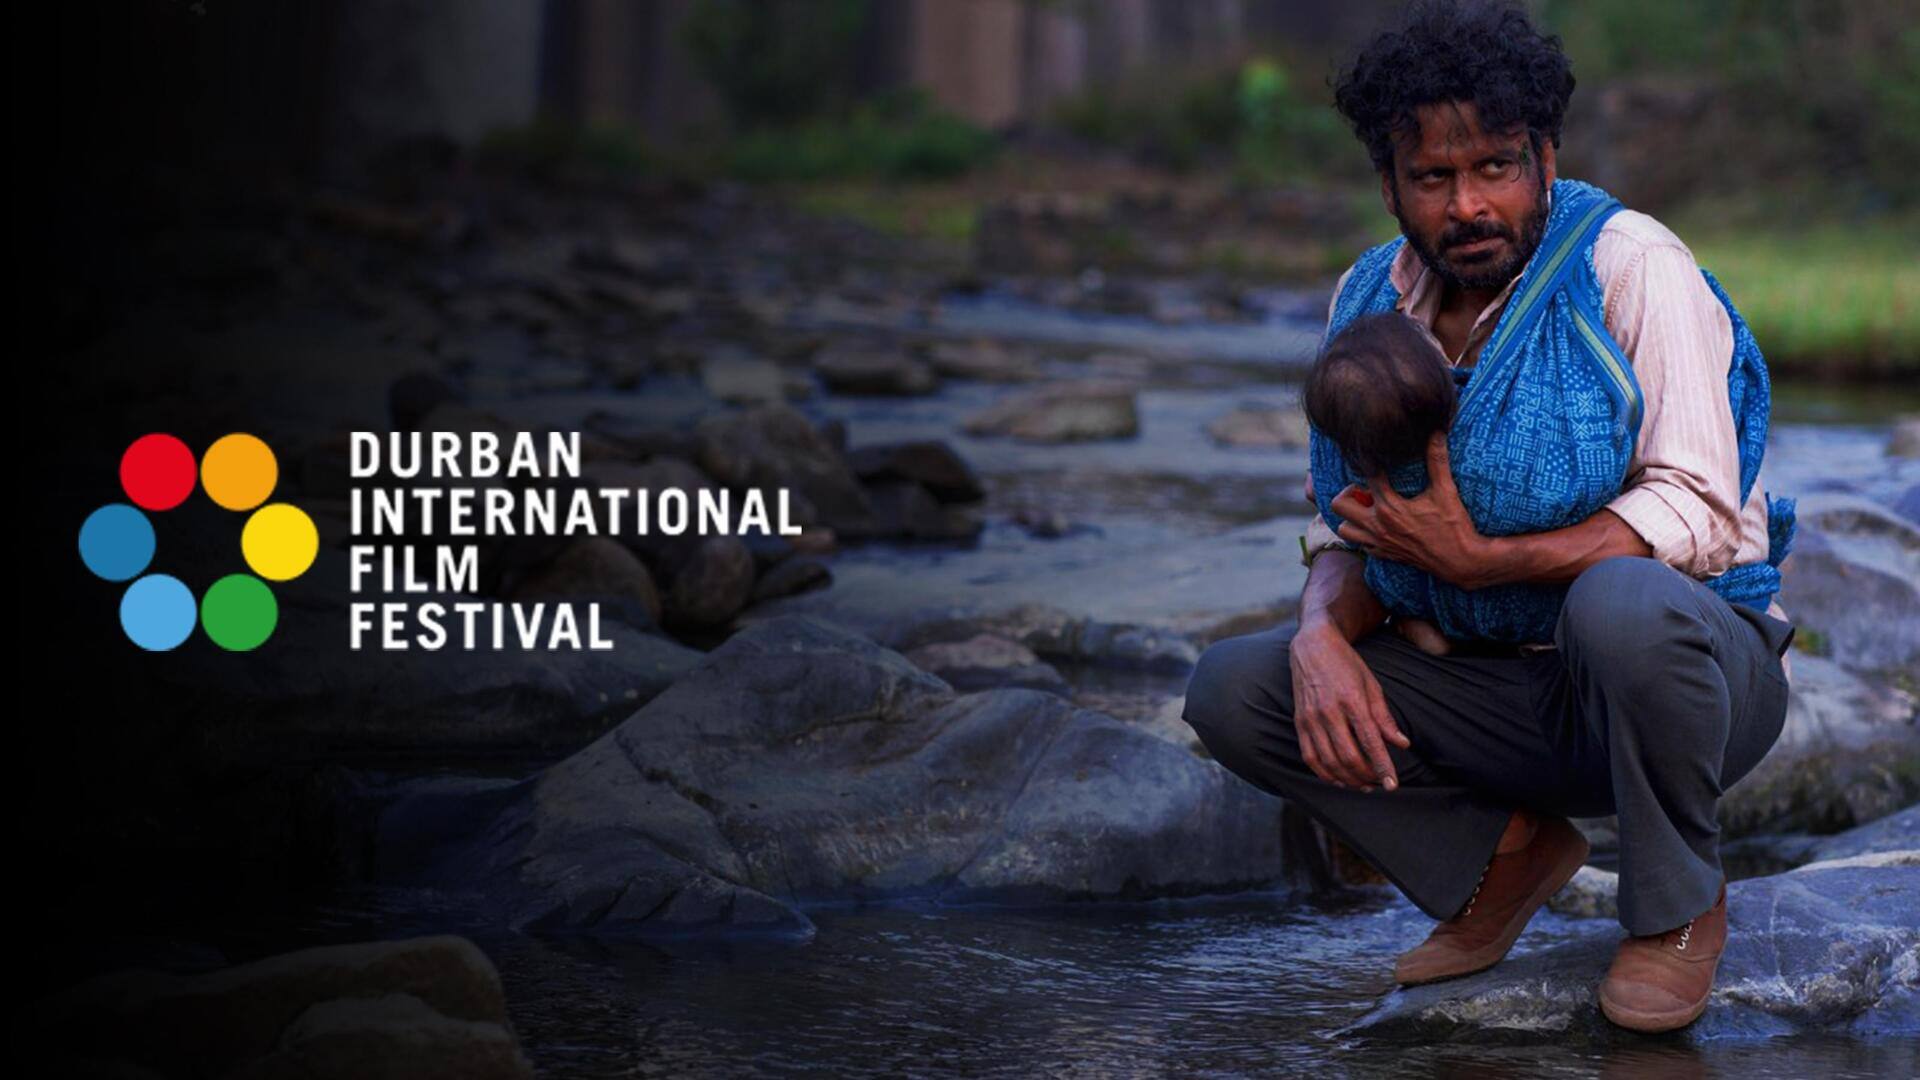 मनोज बाजपेयी की 'जोरम' पहुंची डरबन इंटरनेशनल फिल्म फेस्टिवल, अभिनेता ने जताई खुशी